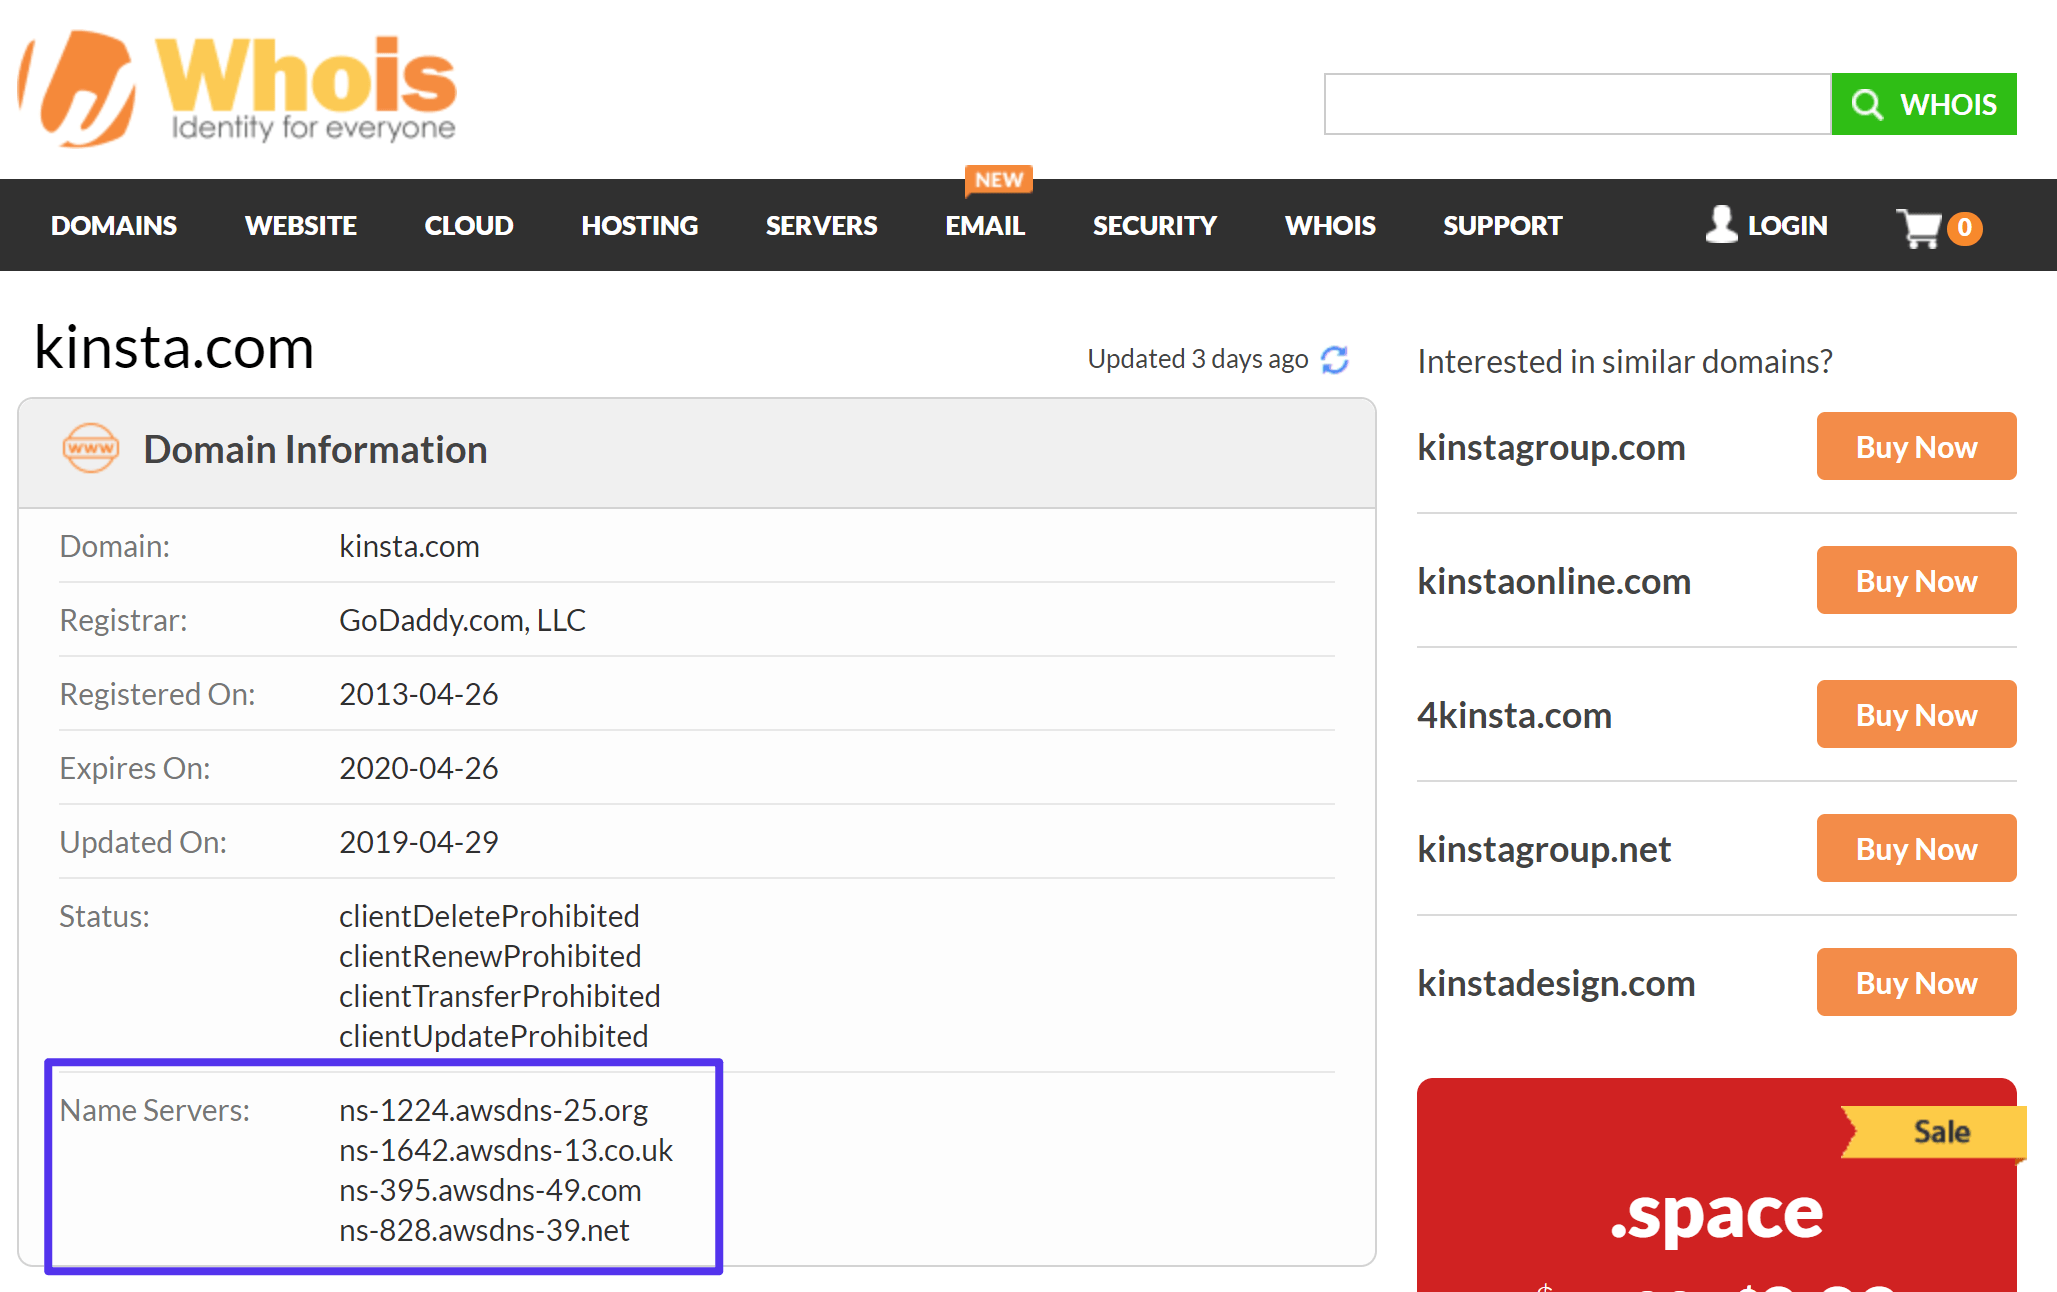 Come verificare i server dei nomi che state utilizzando con Whois